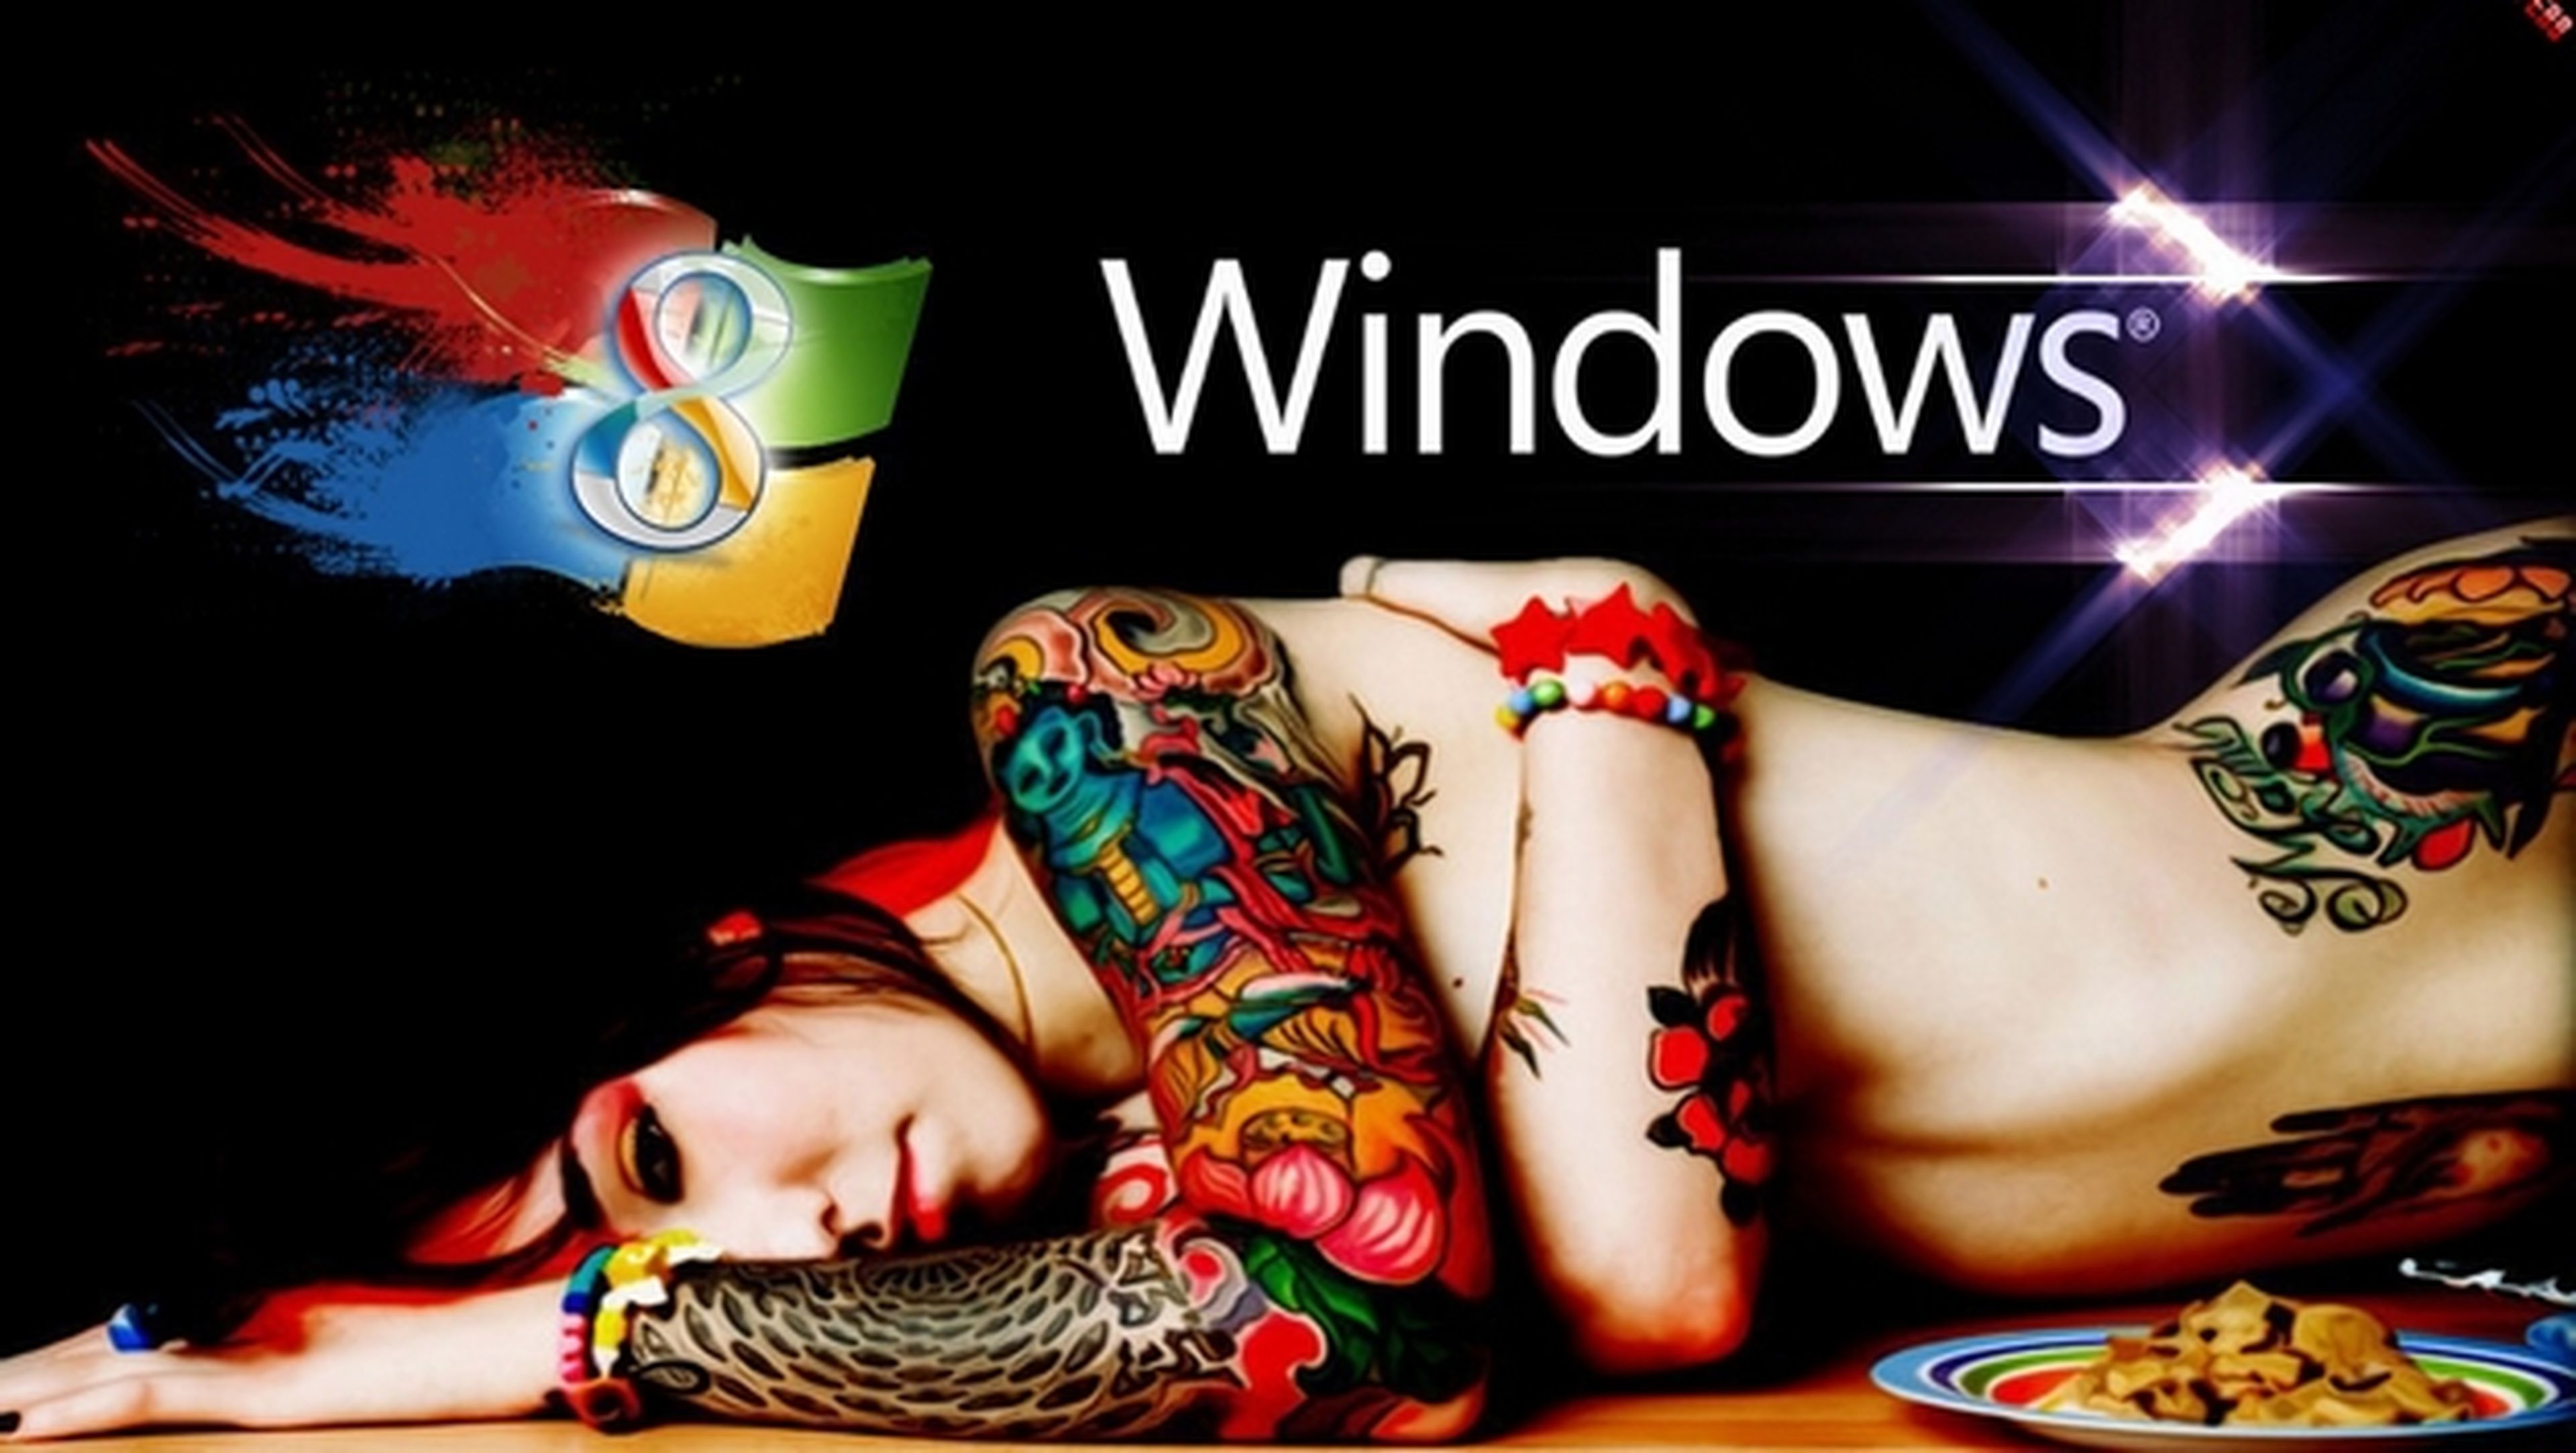 Windows 8 llega a los 200 millones de licencias vendidas